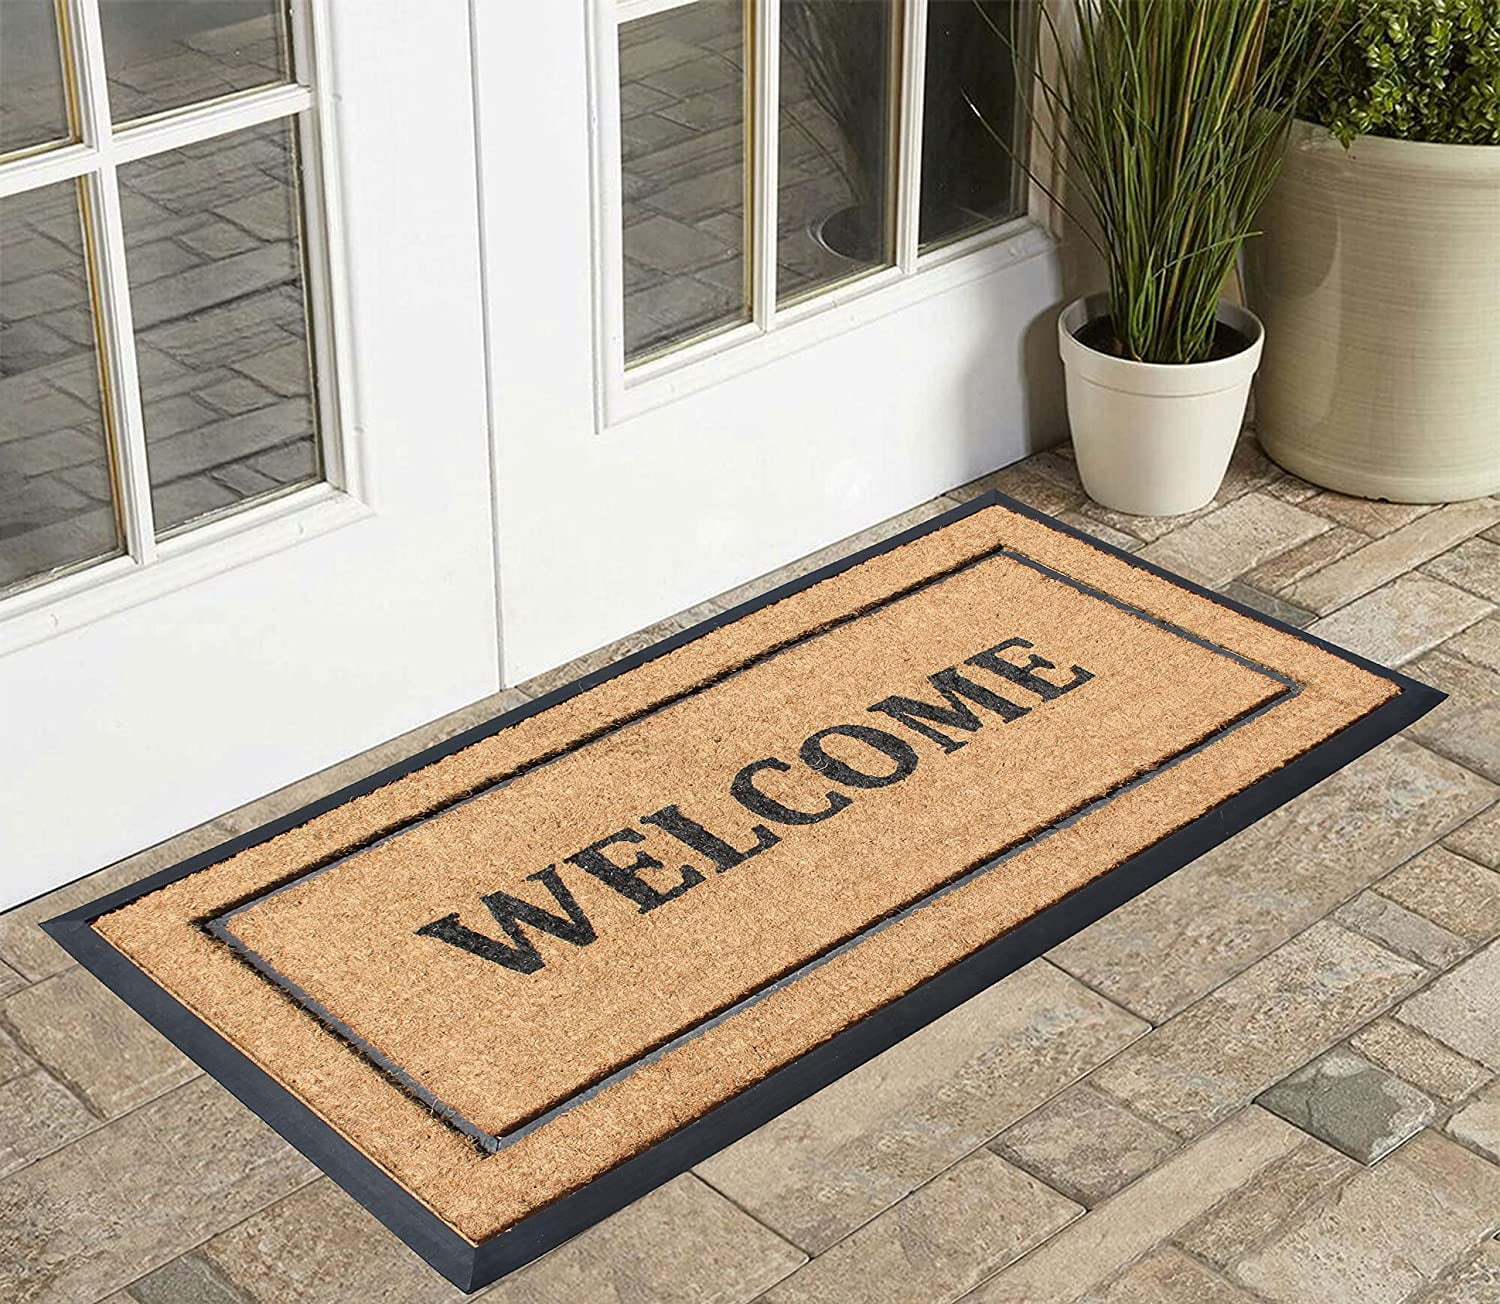 Latitude Run® Doormat Heavy Duty Non Slip Durable 48 x 32 Non-Slip Indoor  Outdoor Door Mats & Reviews